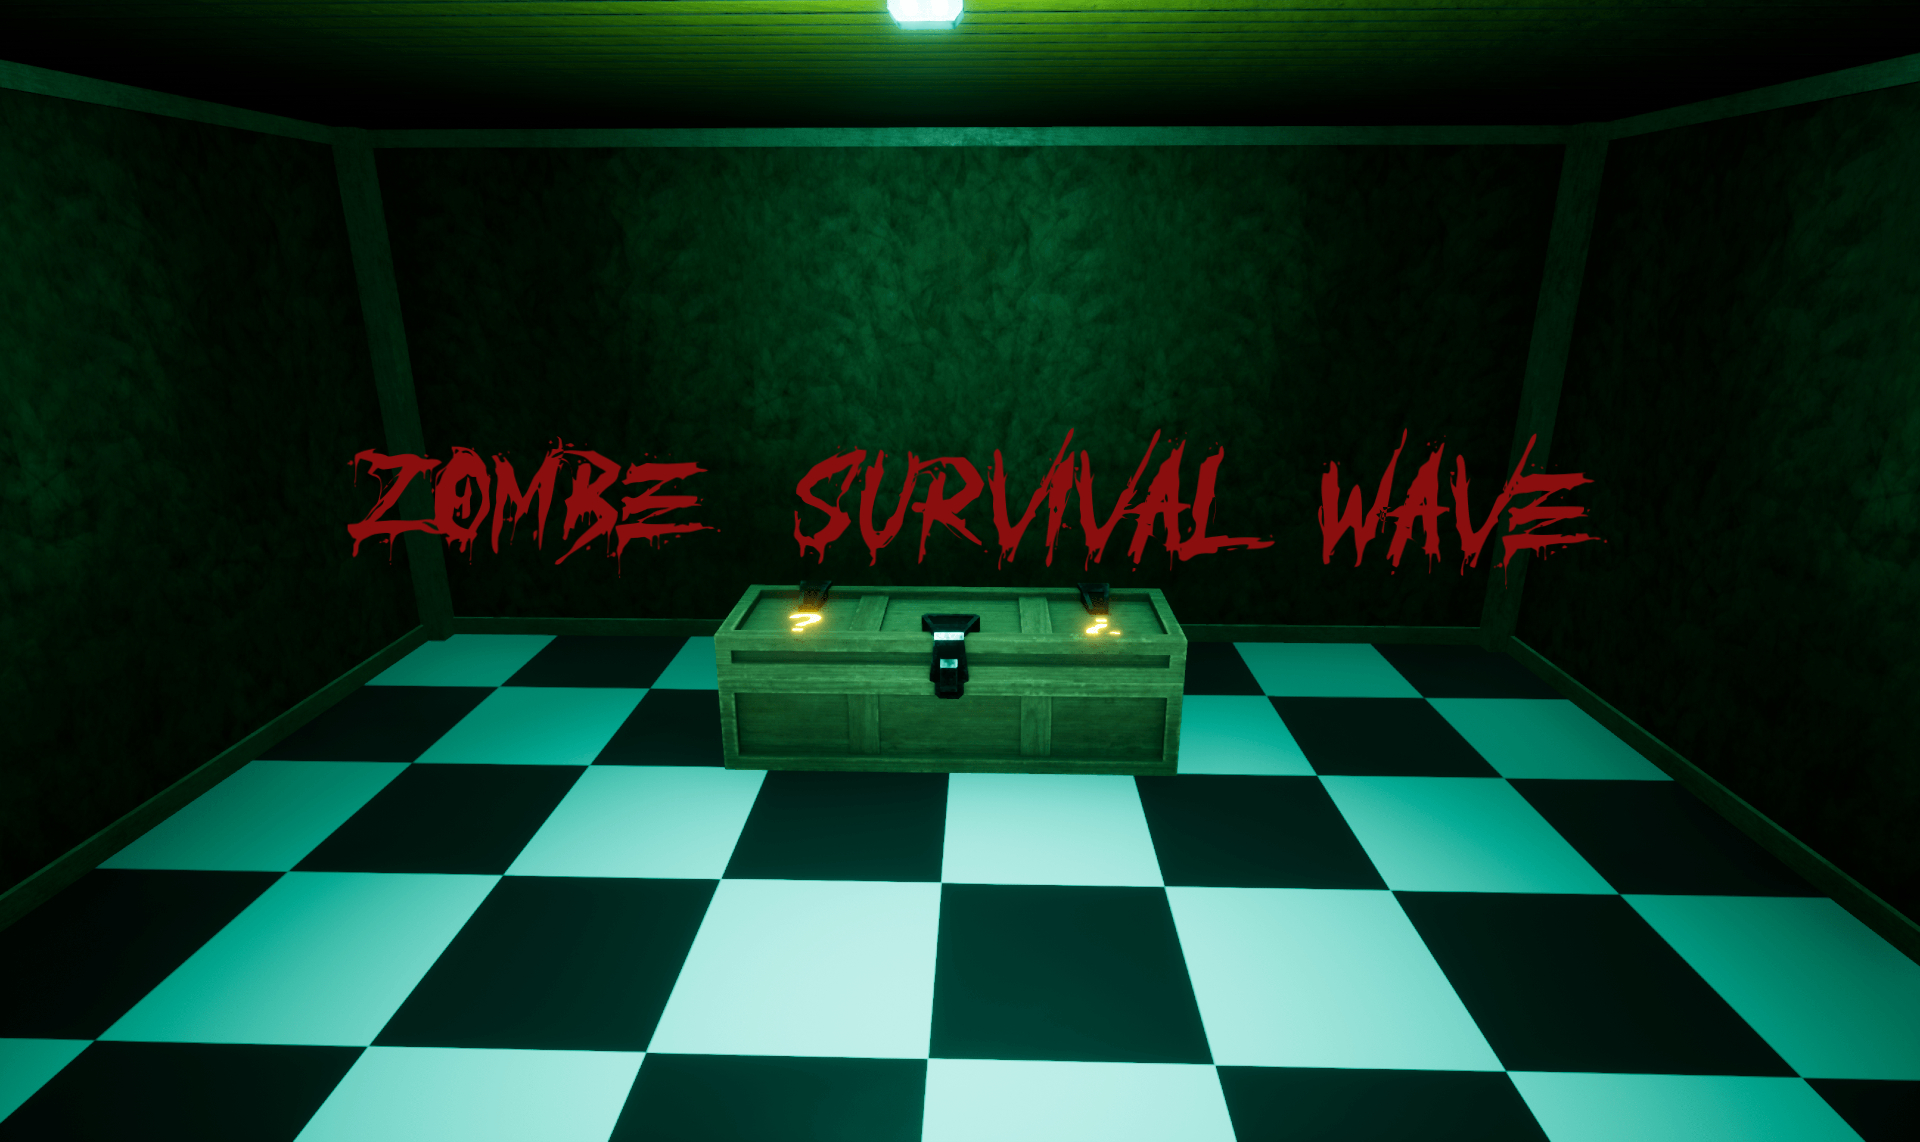 Zombie Survival Wave